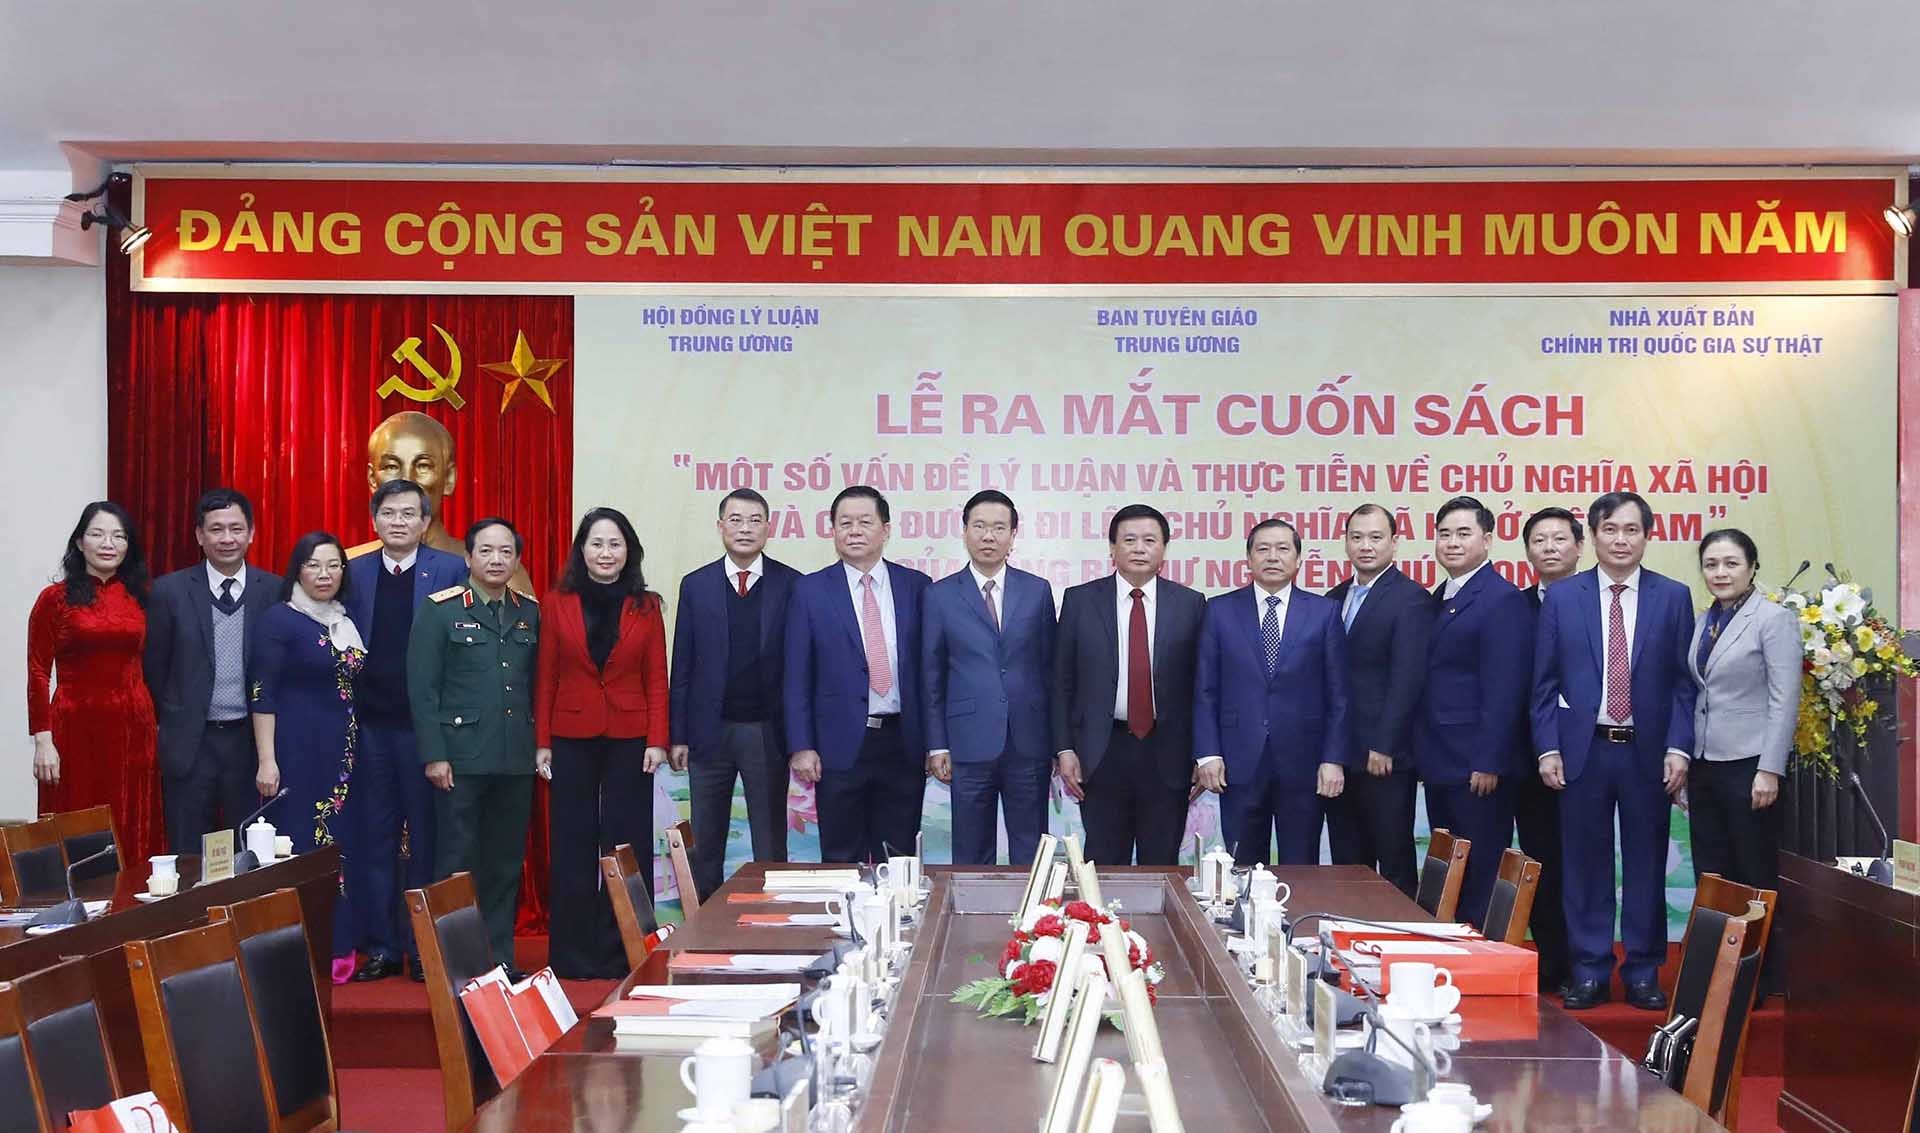 Ra mắt cuốn sách "Một số vấn đề lý luận và thực tiễn về chủ nghĩa xã hội và con đường đi lên chủ nghĩa xã hội ở Việt Nam” của Tổng Bí thư Nguyễn Phú T